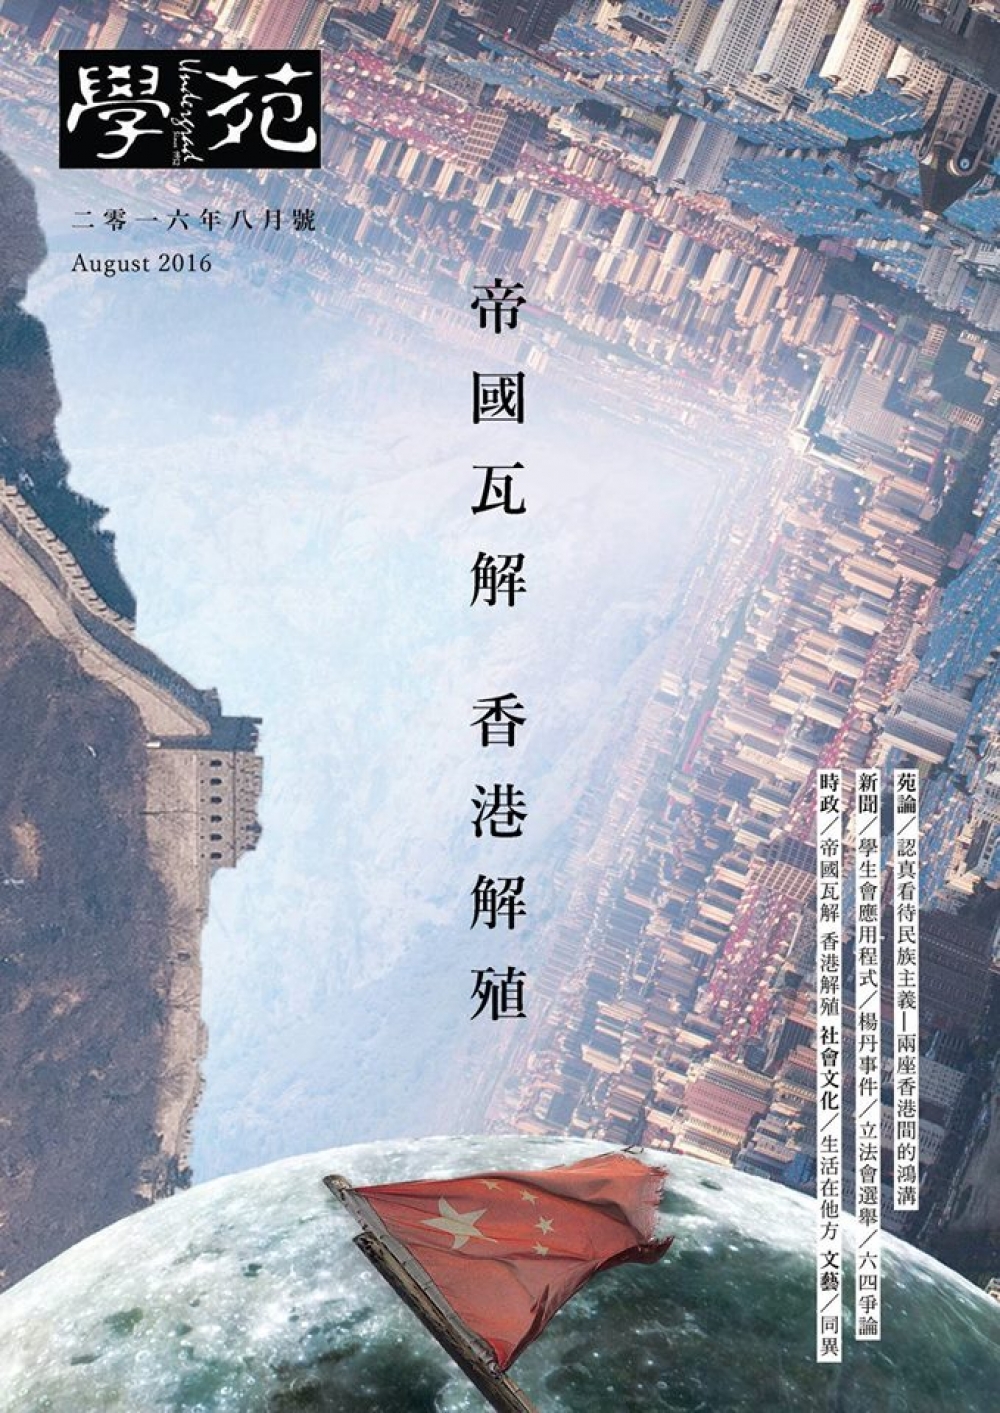 香港大學學生會刊物《學苑》8月號封面。   （翻攝自「香港大學學生會學苑」臉書）